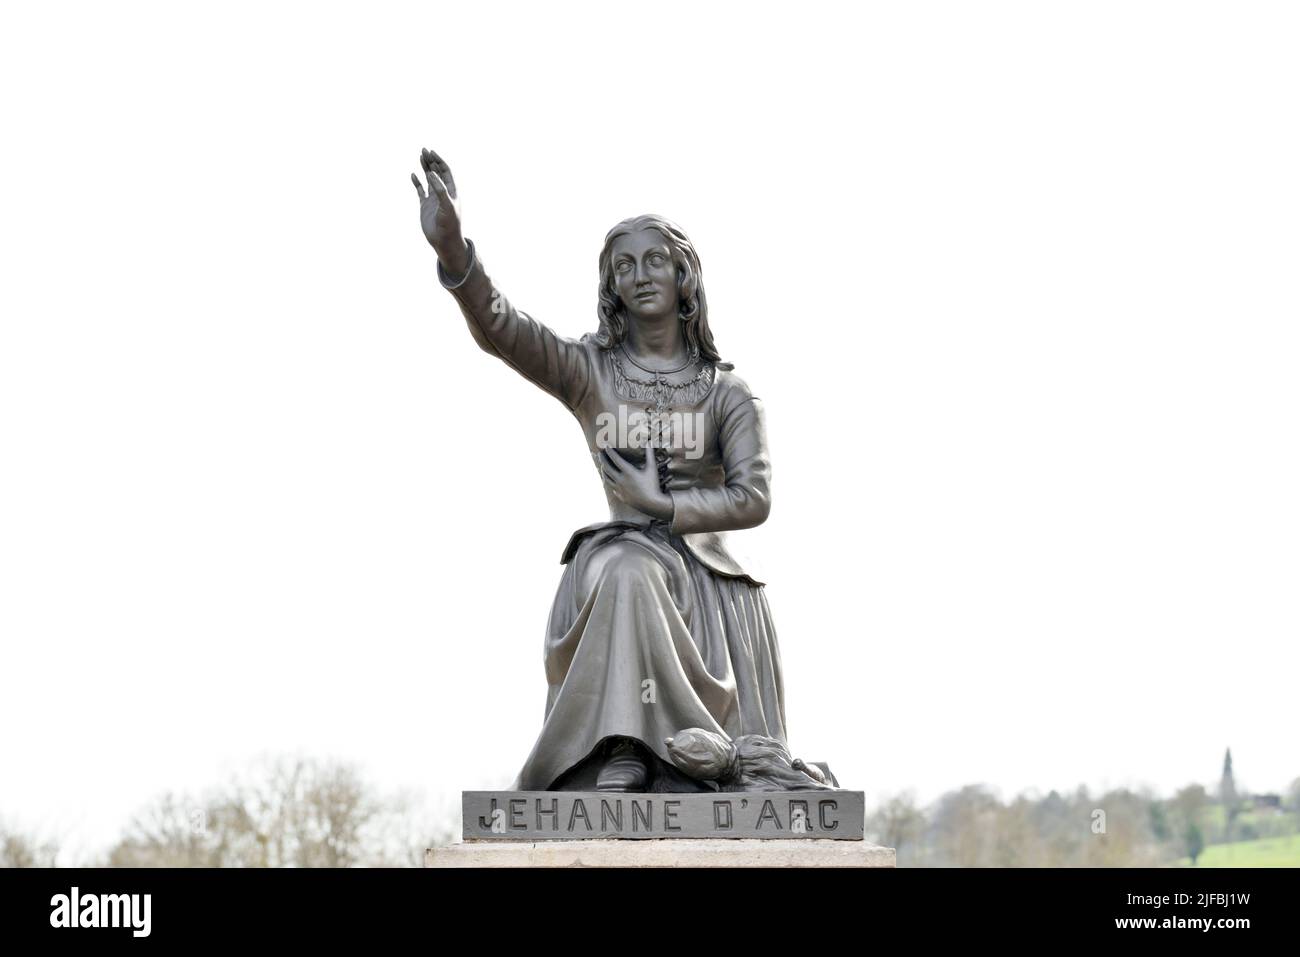 Francia, Vosgos, Domremy la Pucelle, lugar de nacimiento de Juana de Arco, lugar de nacimiento de Jeanne, estatua de Jeanne d'Arc Foto de stock